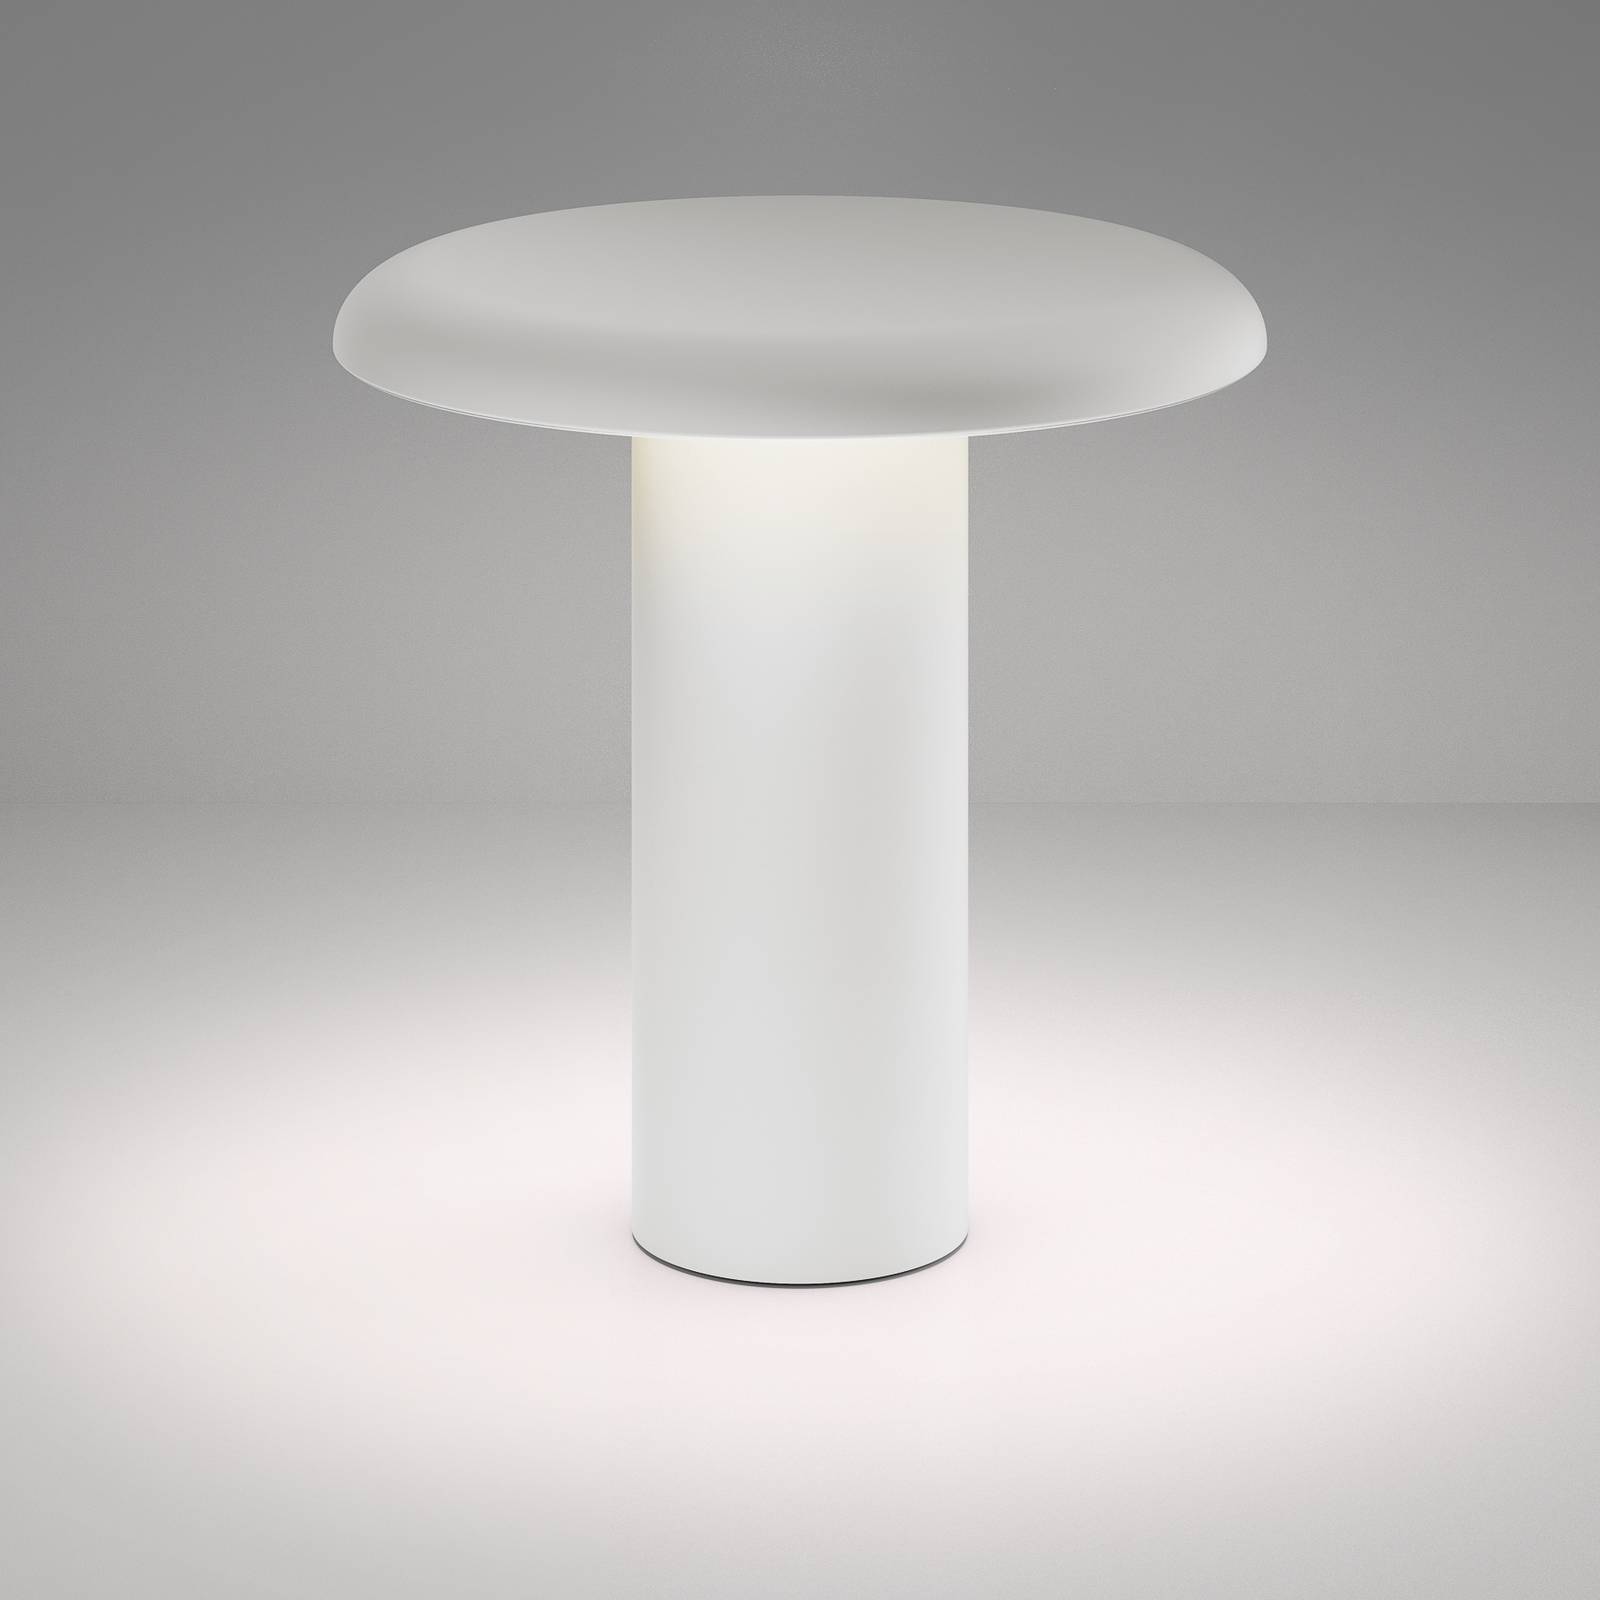 Artemide takku led asztali lámpa újratölthető akkumulátorral, fehér színben